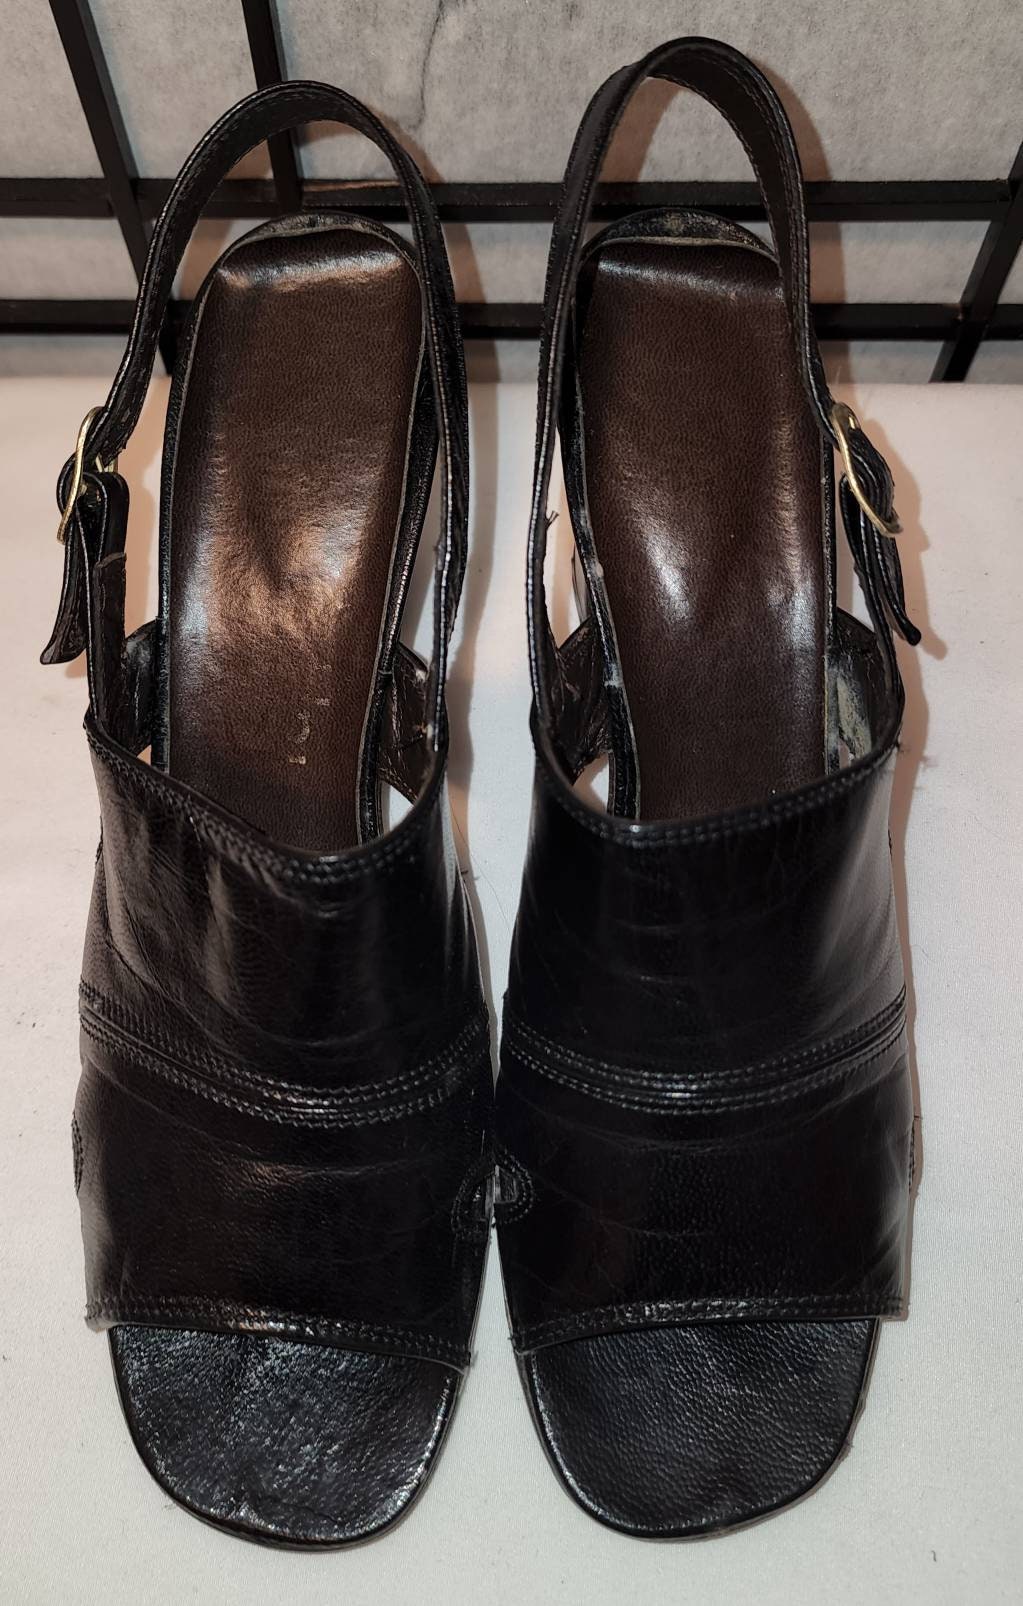 Vintage High Heel Sandals 1970s Black Leather Slingback High Heel Open Toe Shoes Boho 7 1/2 N